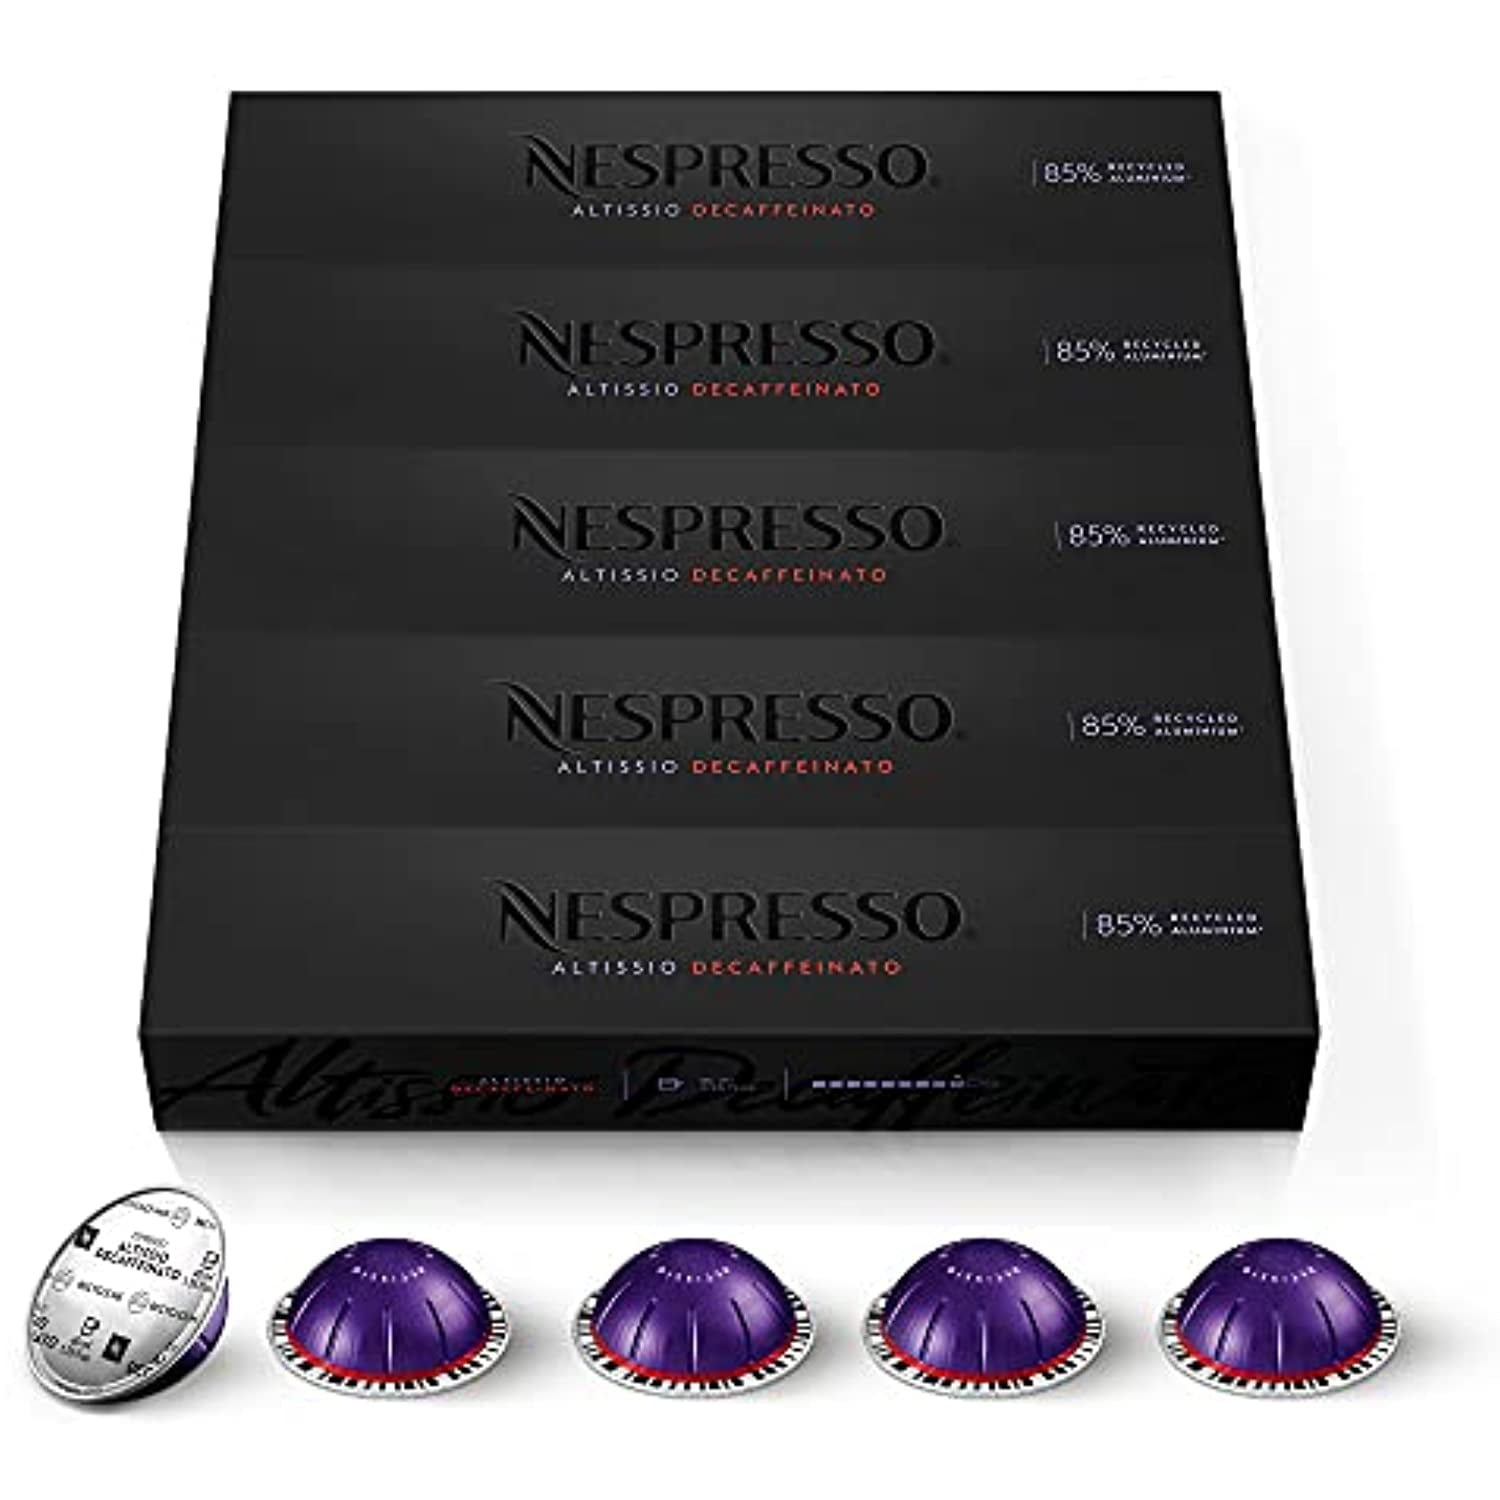 Nespresso Vertuo Altissio Decaffeinato, Dark Roast Espresso, 50